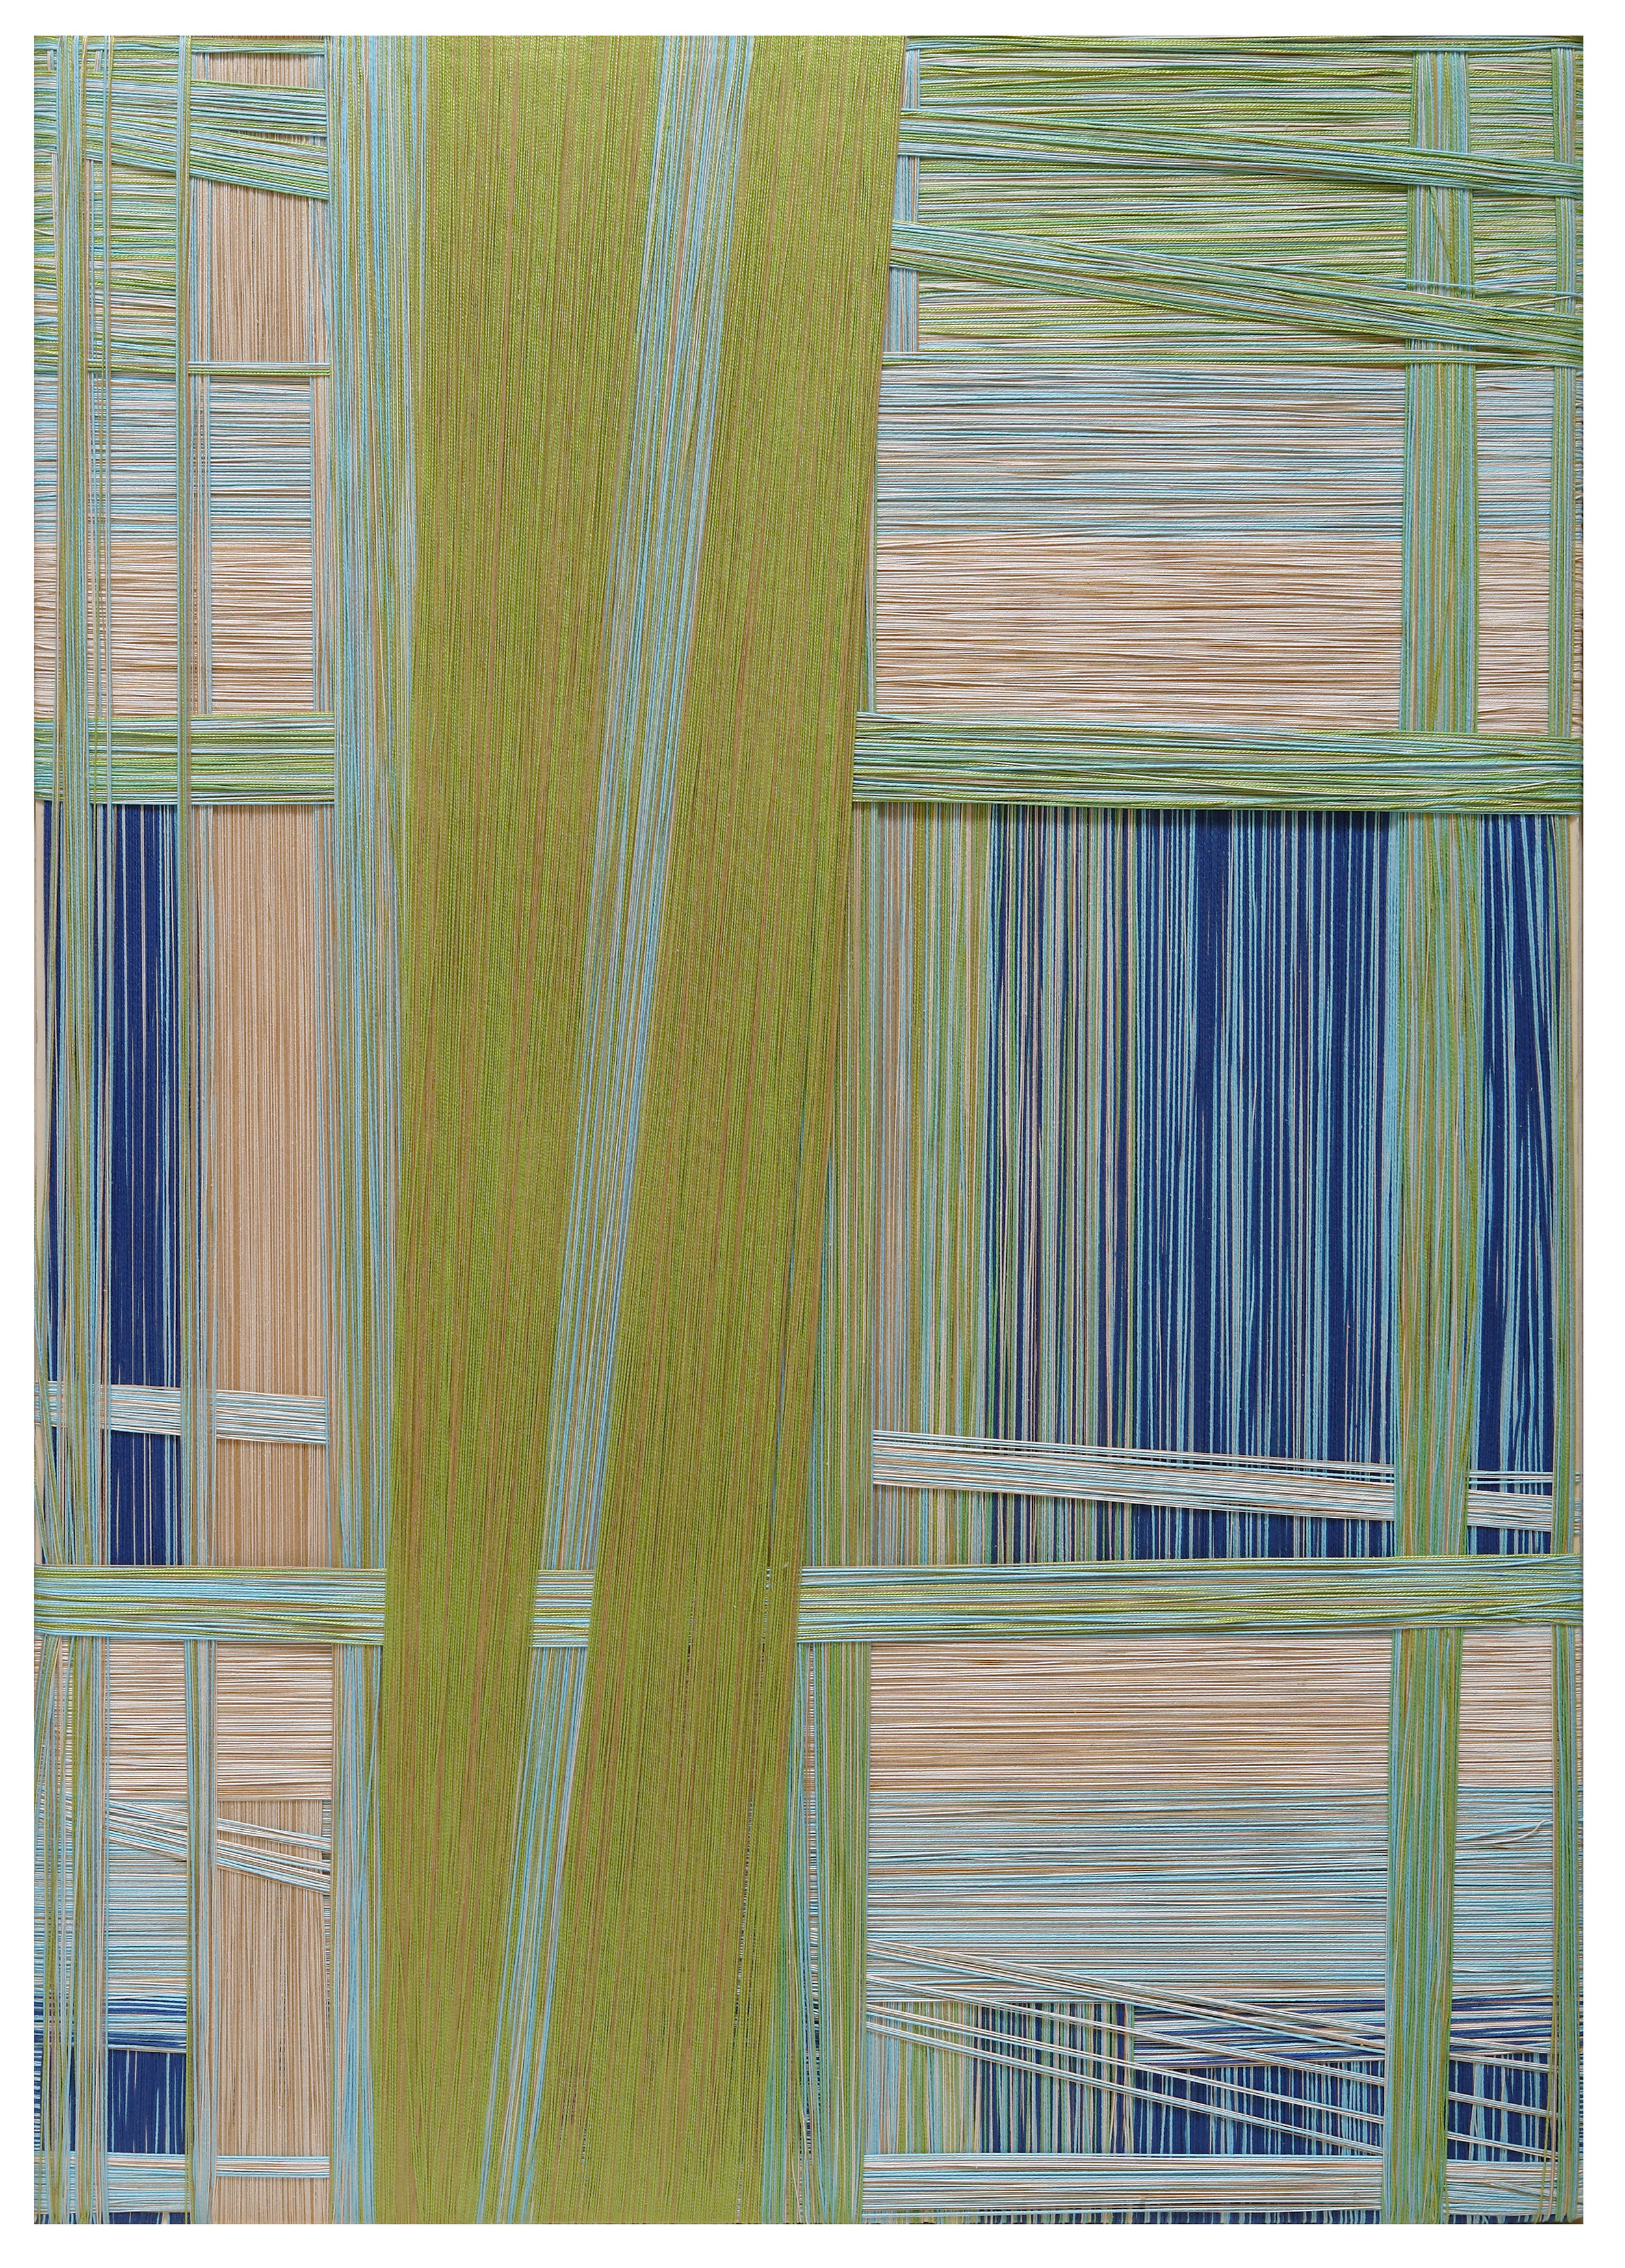 Windows, filo di cotone su legno, cm 140 x 100, anno 2011.jpg